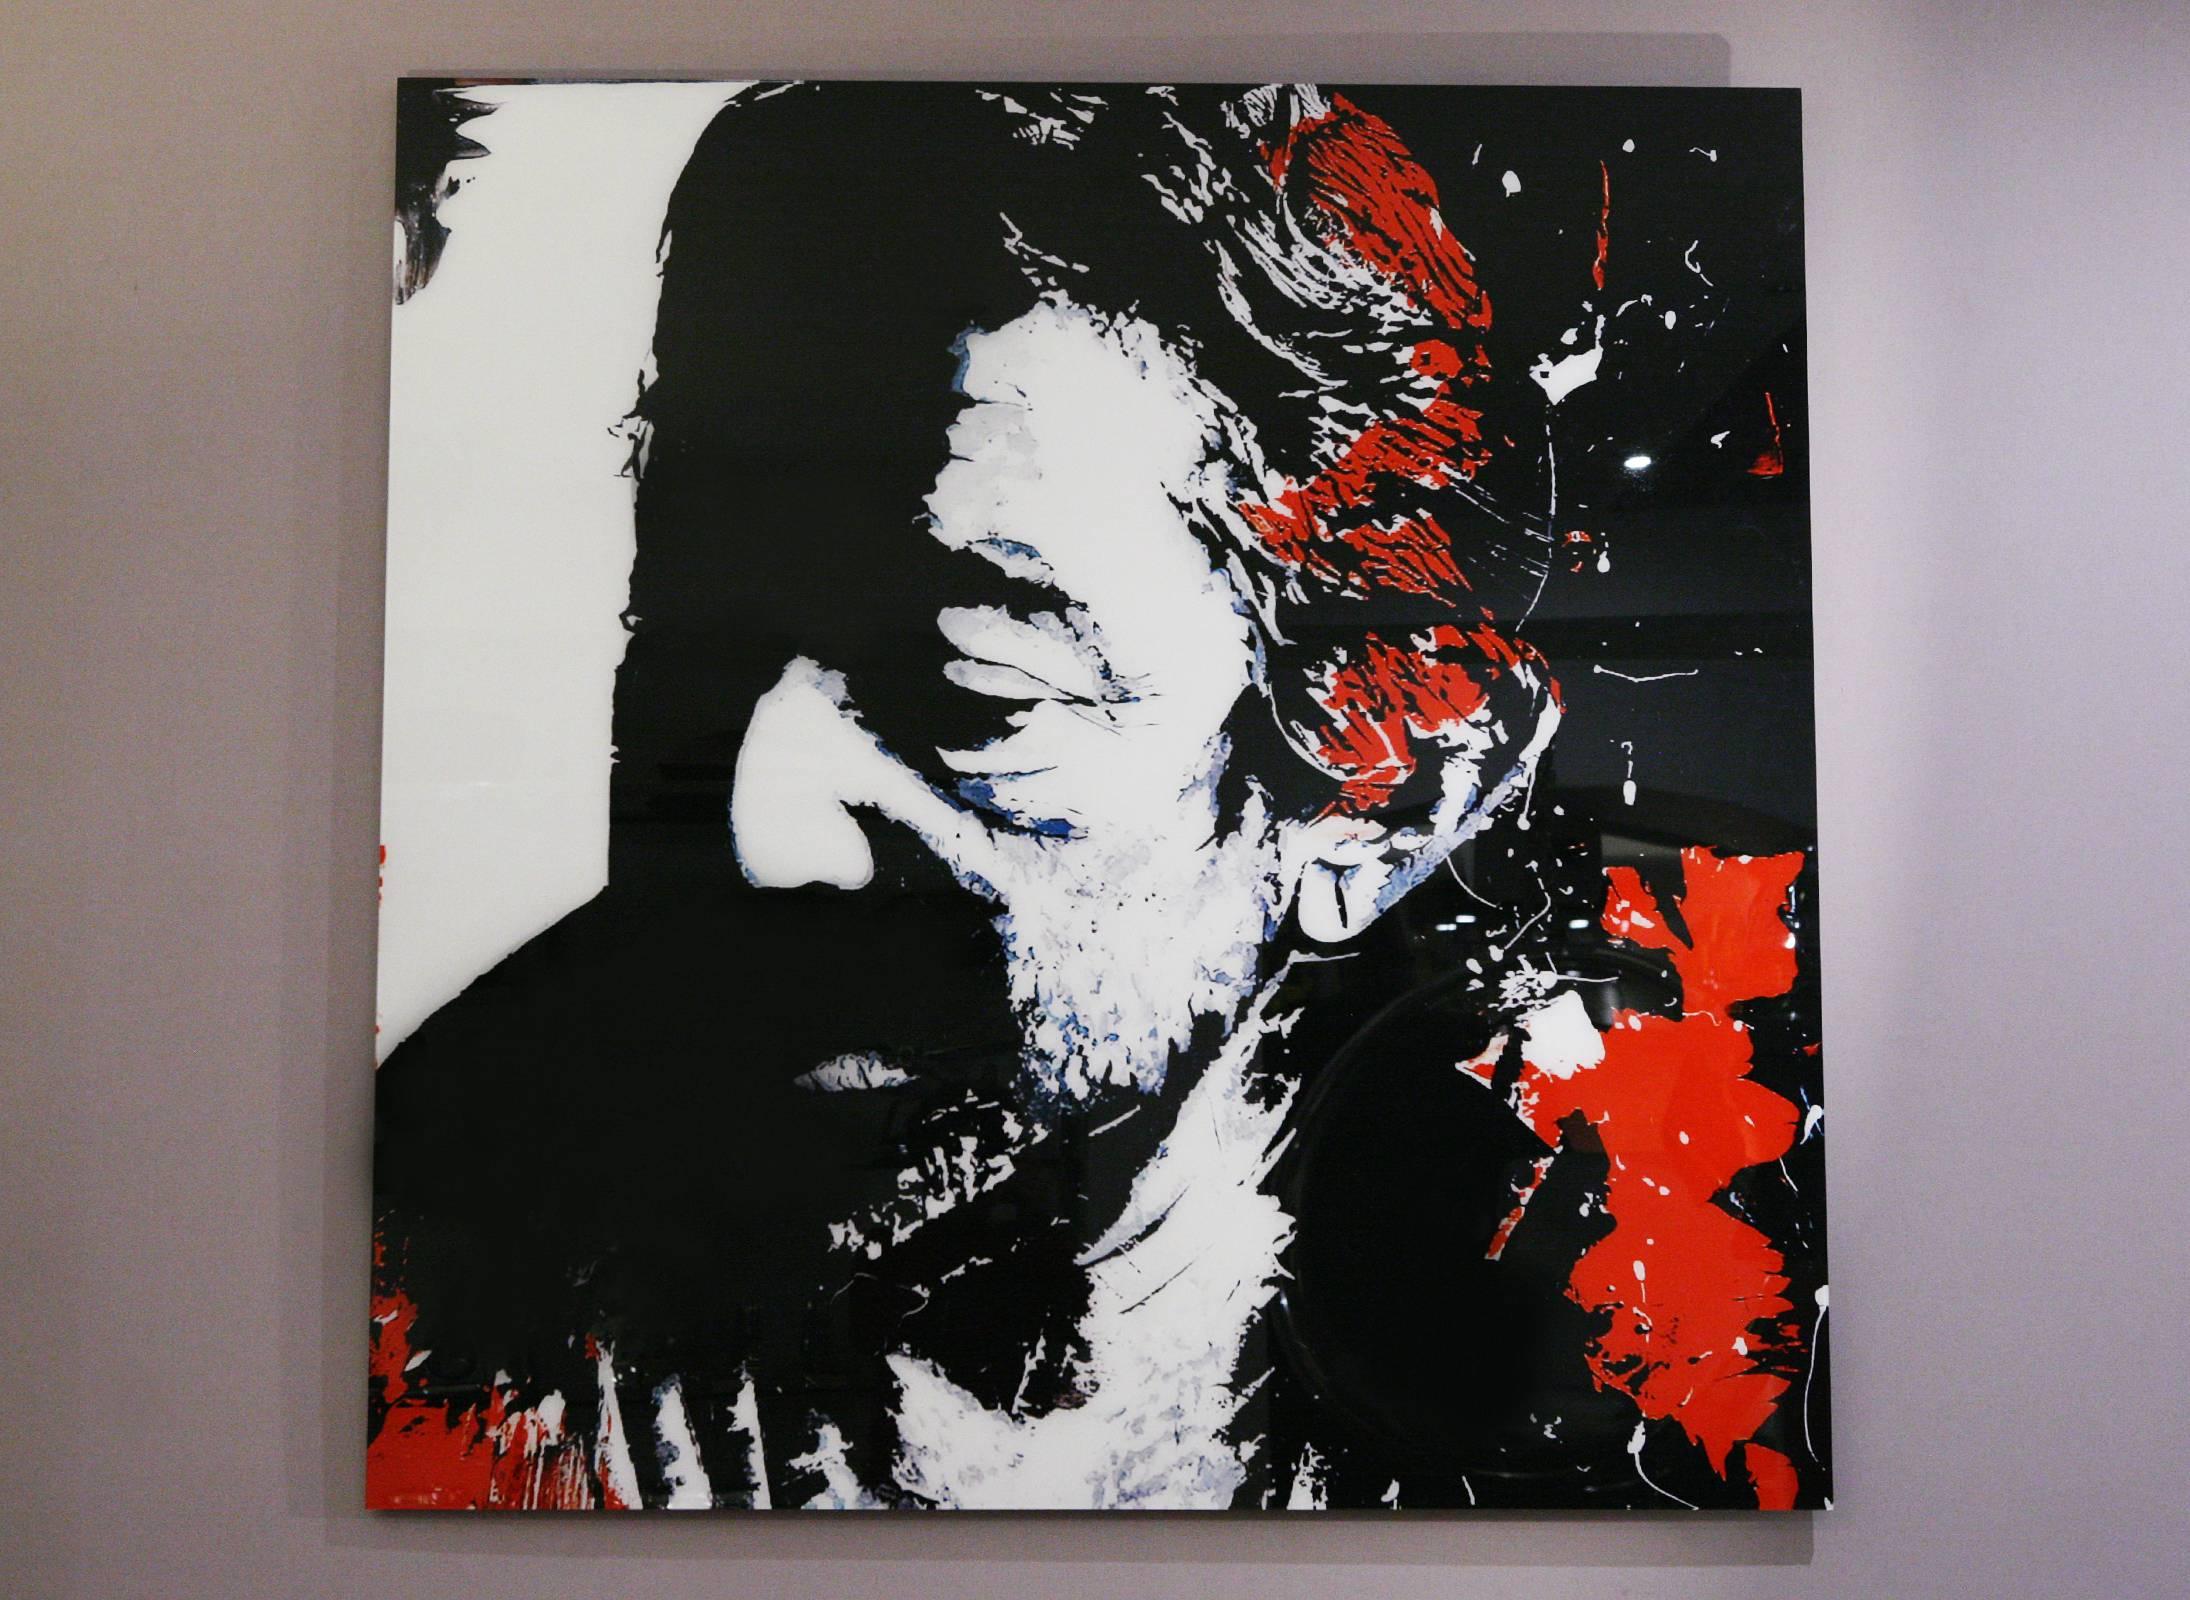 Fotografie Serge Gainsbourg auf Plexiglas.
Limitierte Auflage von sechs Stück. Hergestellt von Valerie 
Durand-Künstler. Wird mit Zertifikat geliefert.
